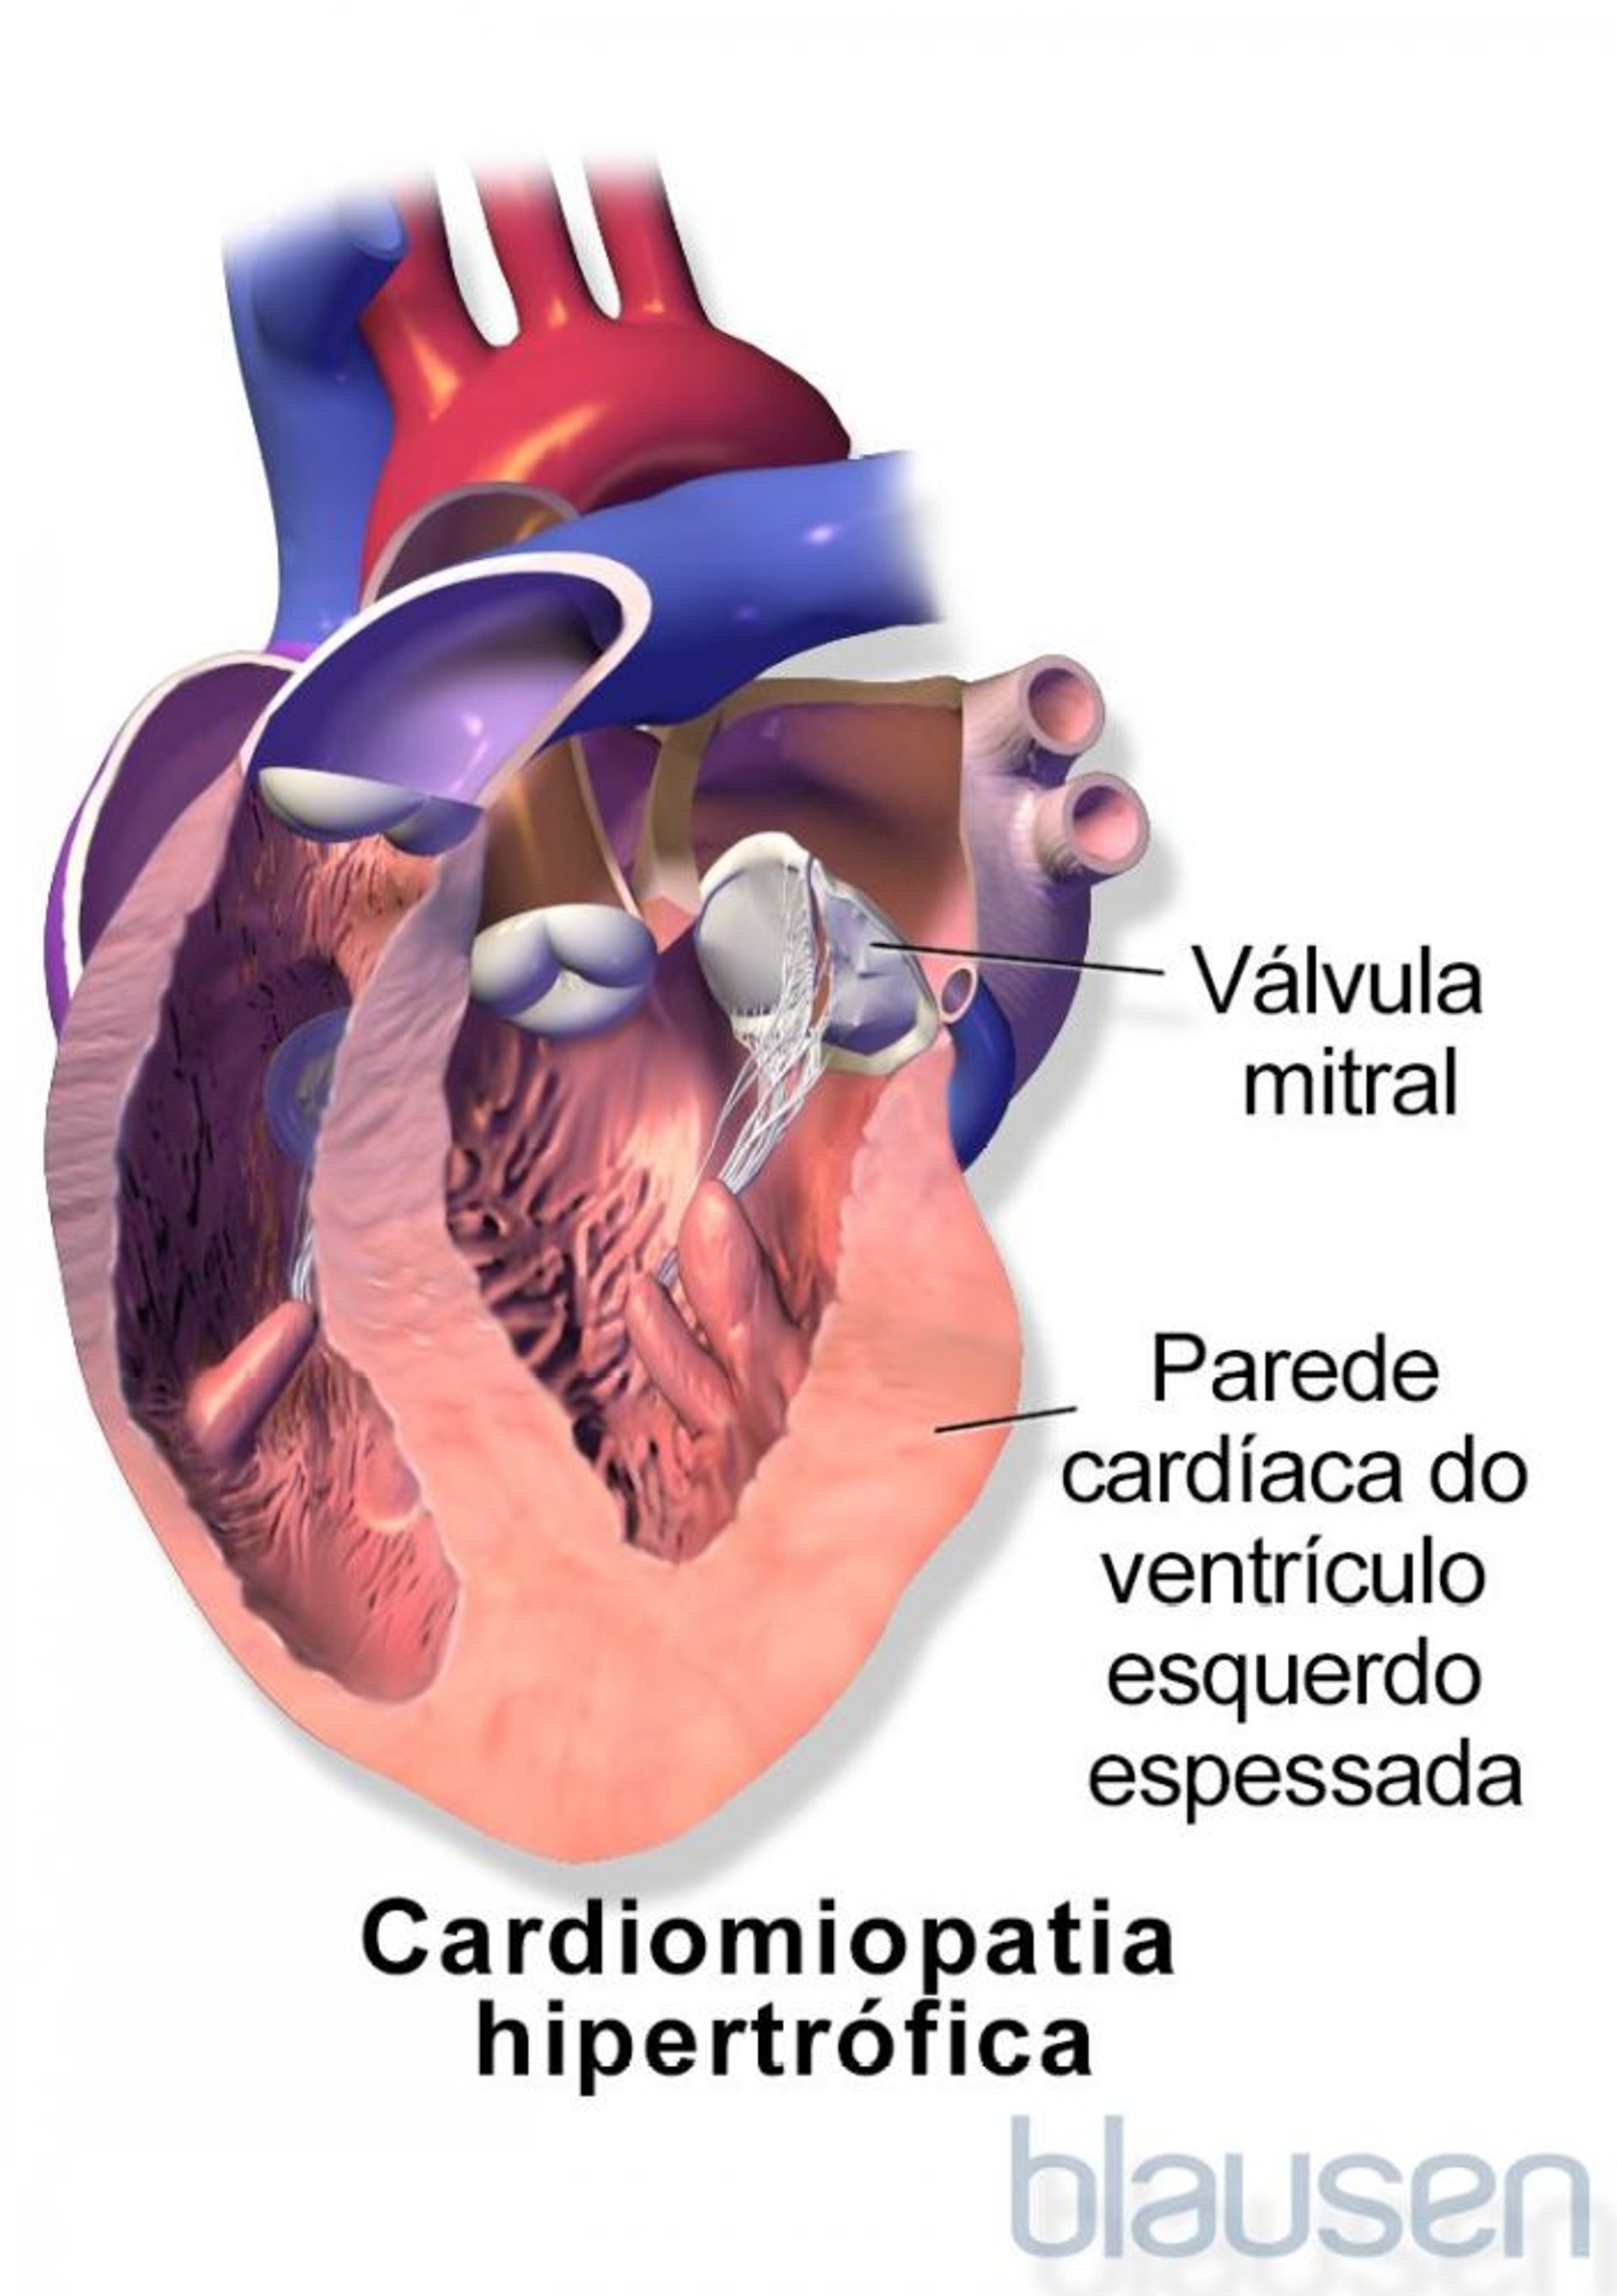 Cardiomiopatia hipertrófica